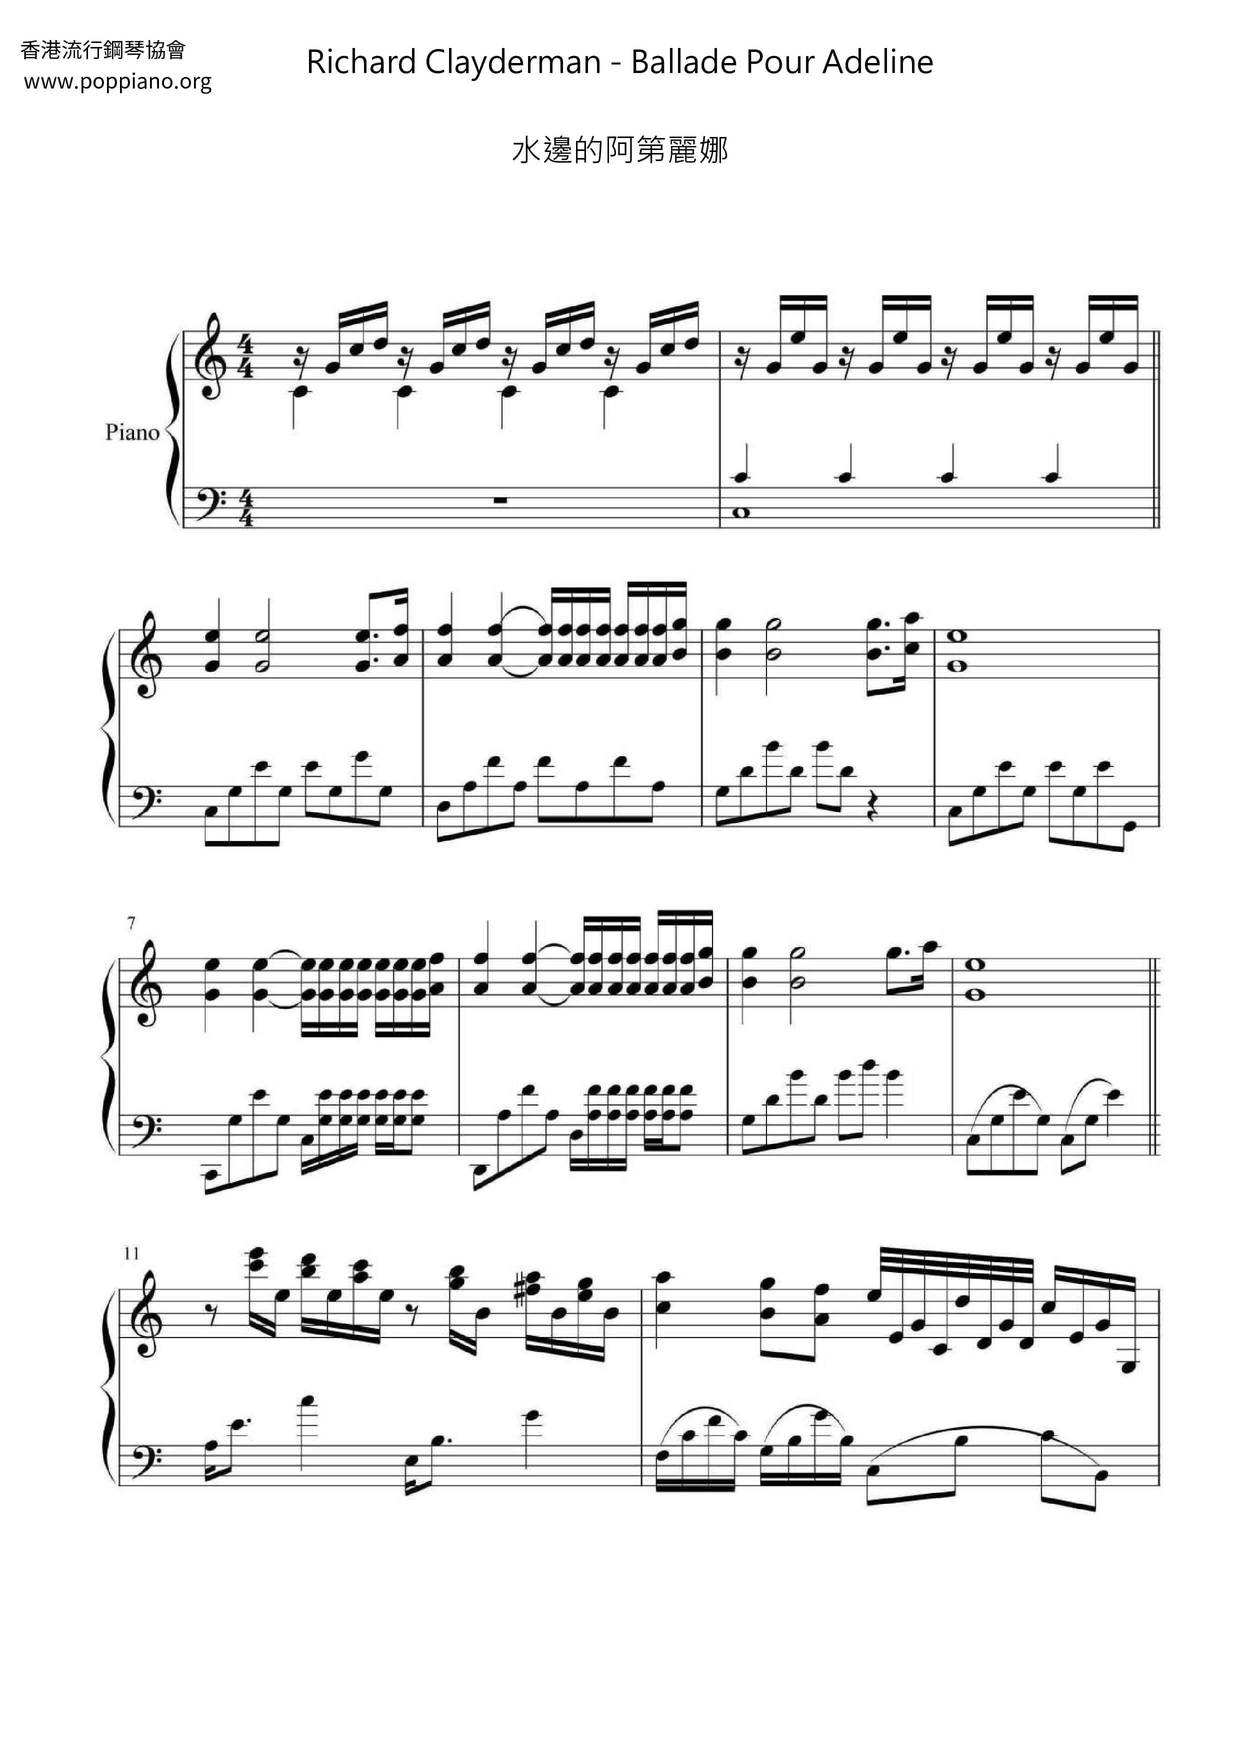 Richard Clayderman Ballade Pour Adeline Sheet Music Pdf リチャード クレイダーマン Free Score Download